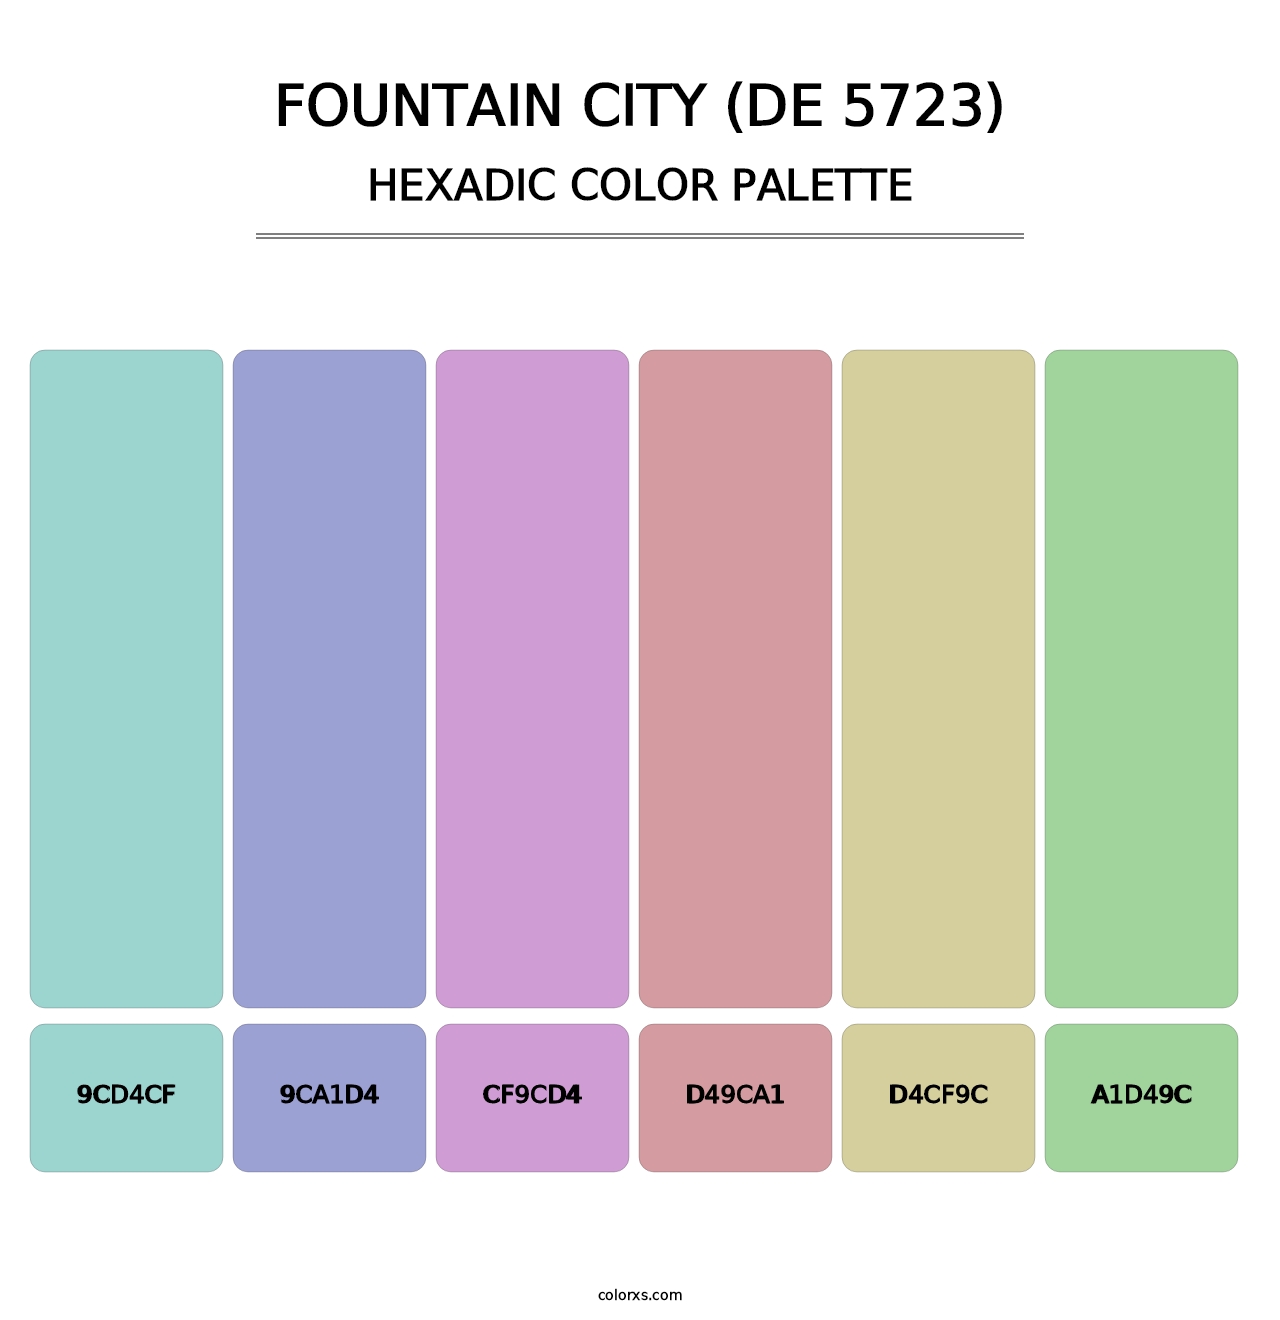 Fountain City (DE 5723) - Hexadic Color Palette